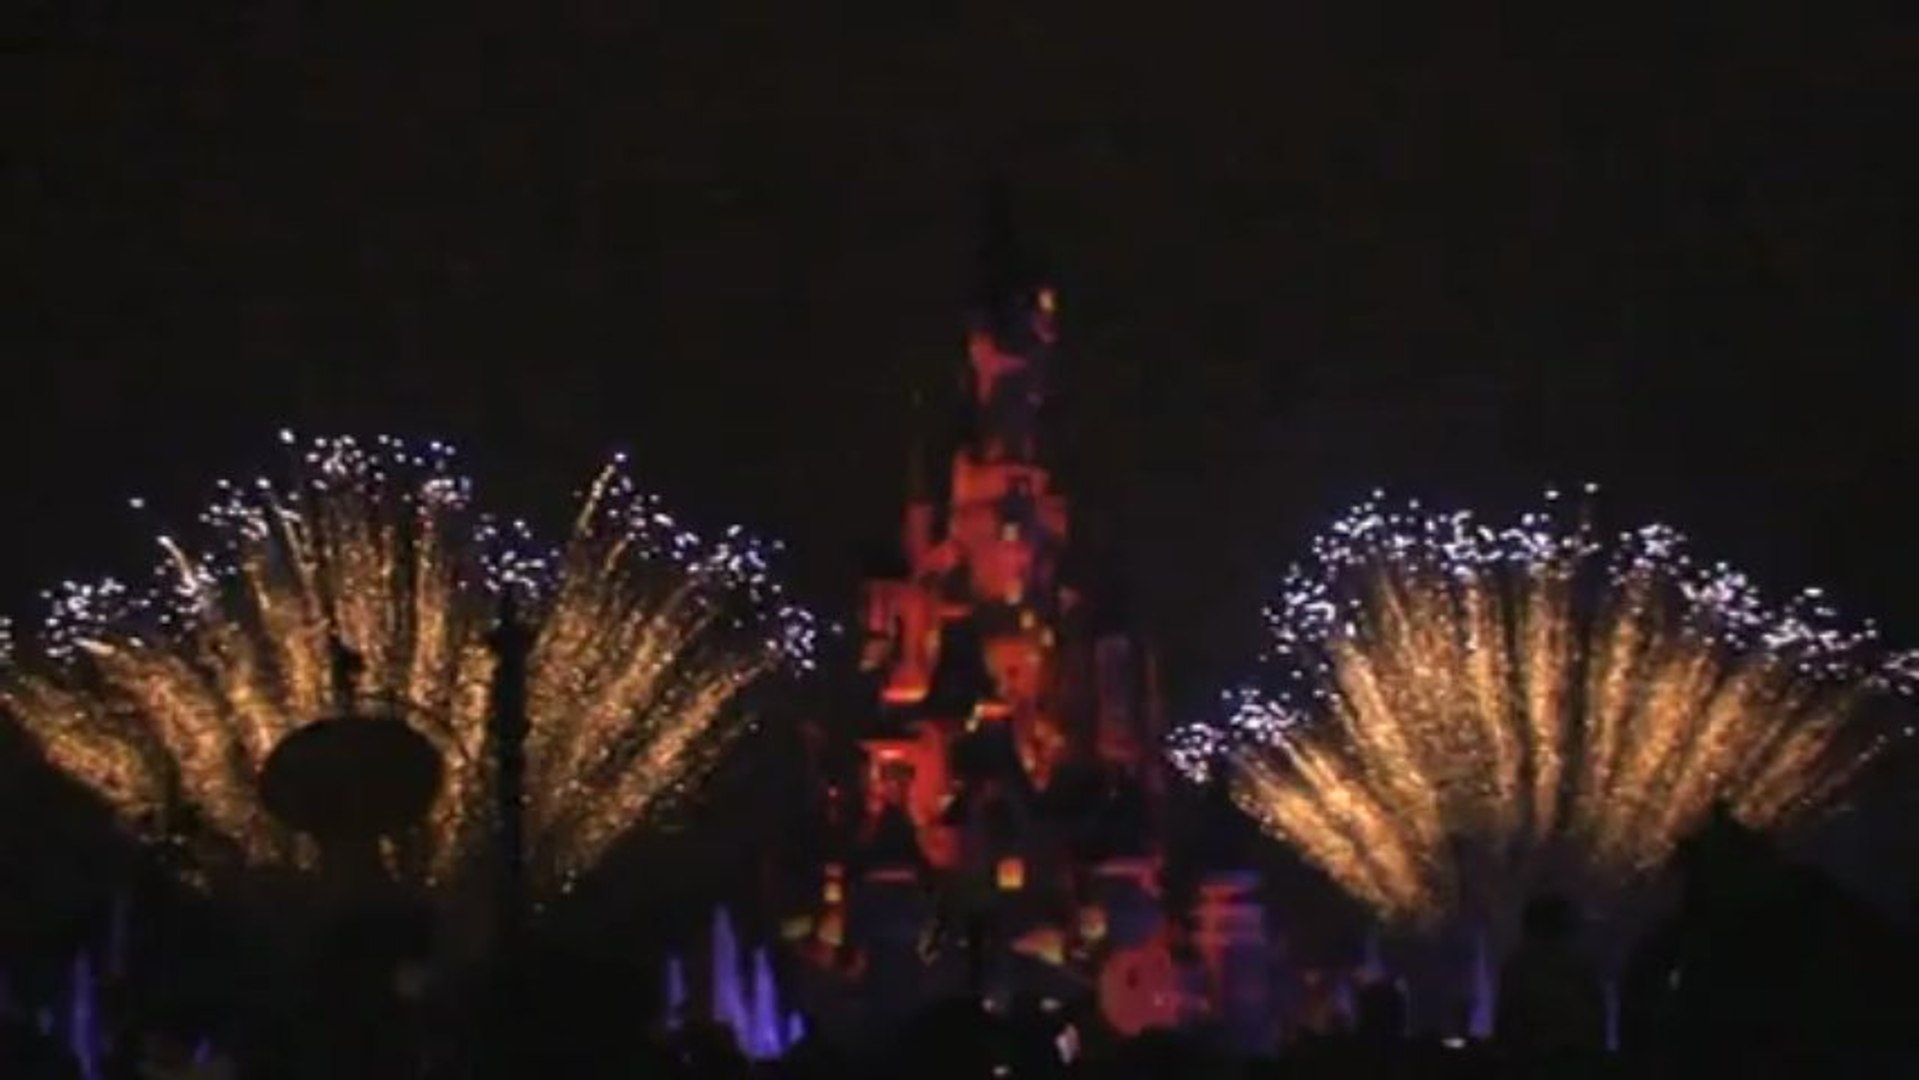 Spectacle Disney Dreams 20 anniversaire Disney